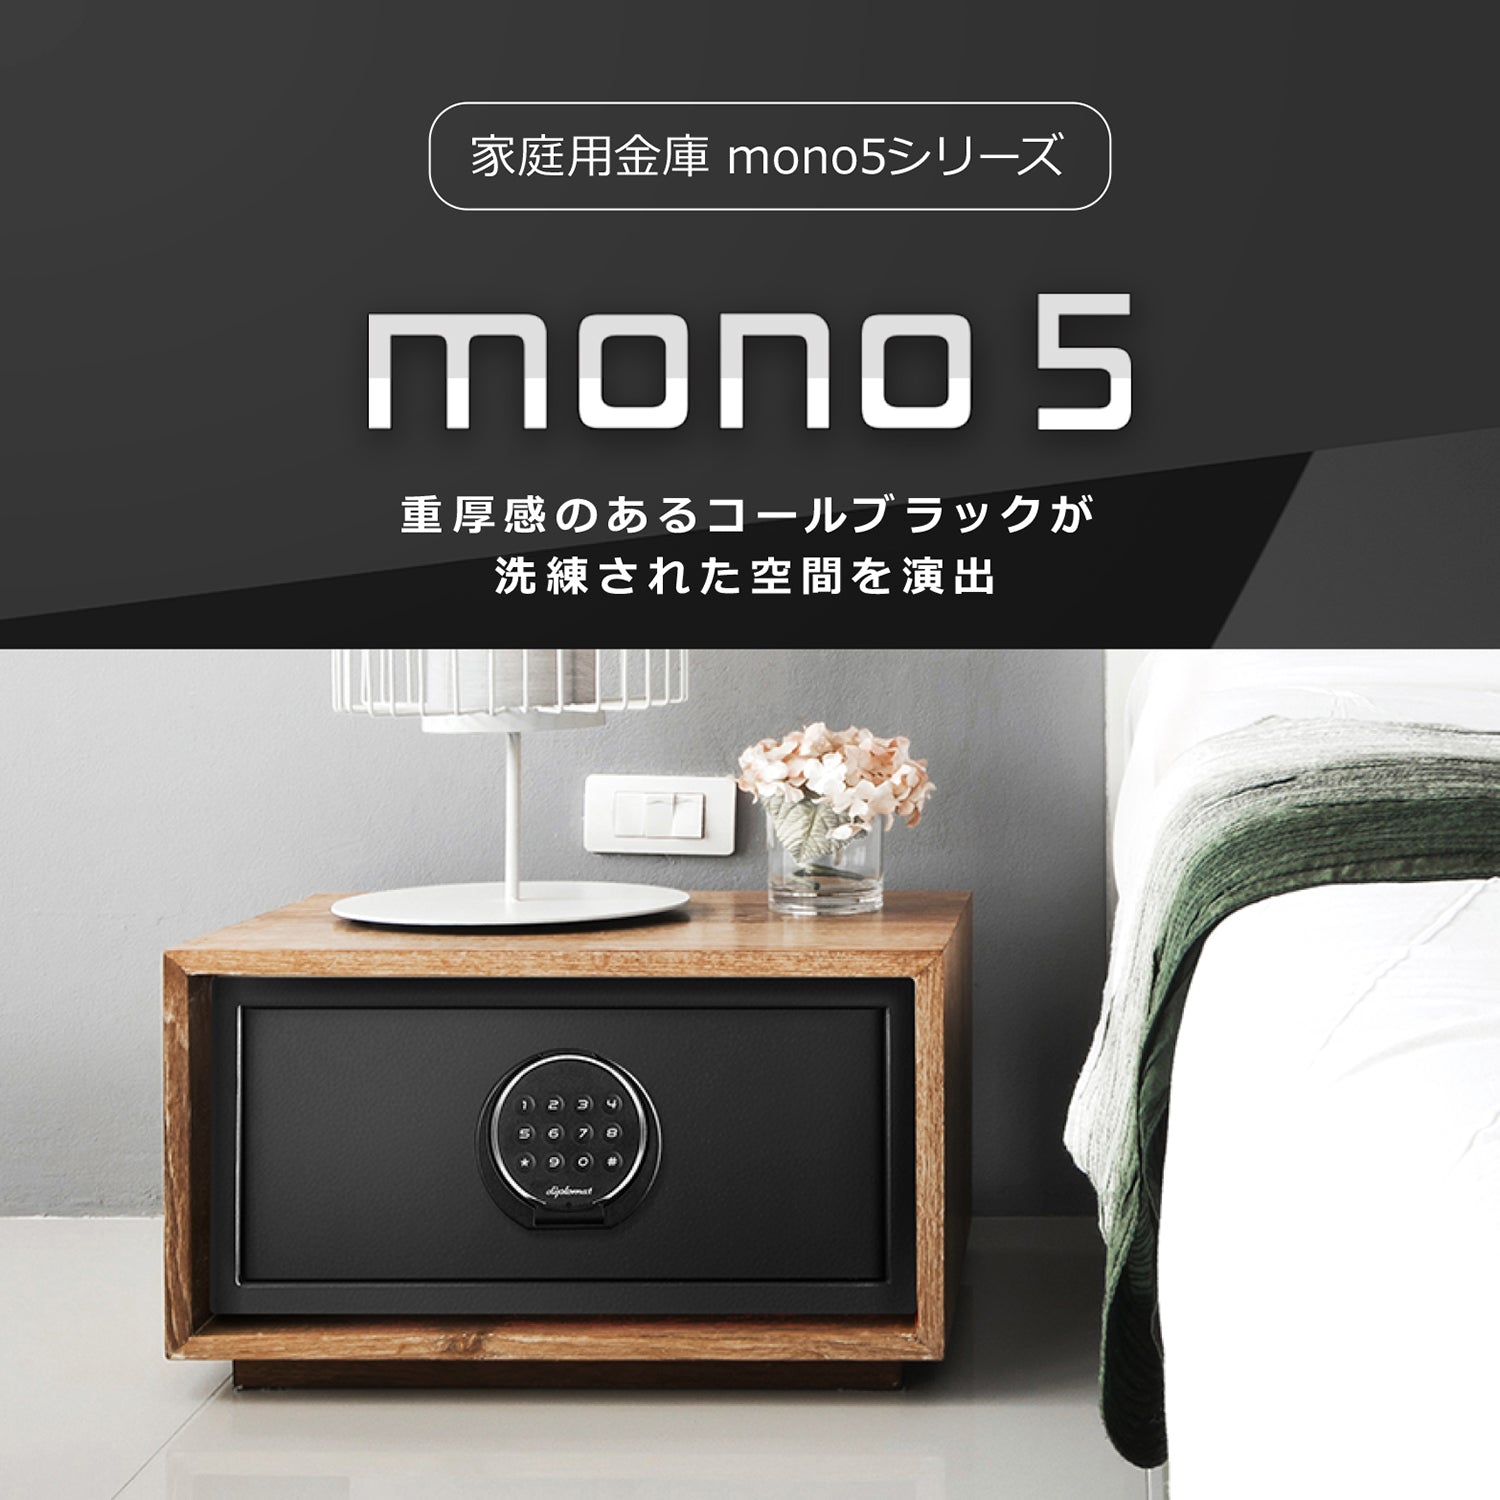 mono5 – ディプロマット・ジャパン・ストア